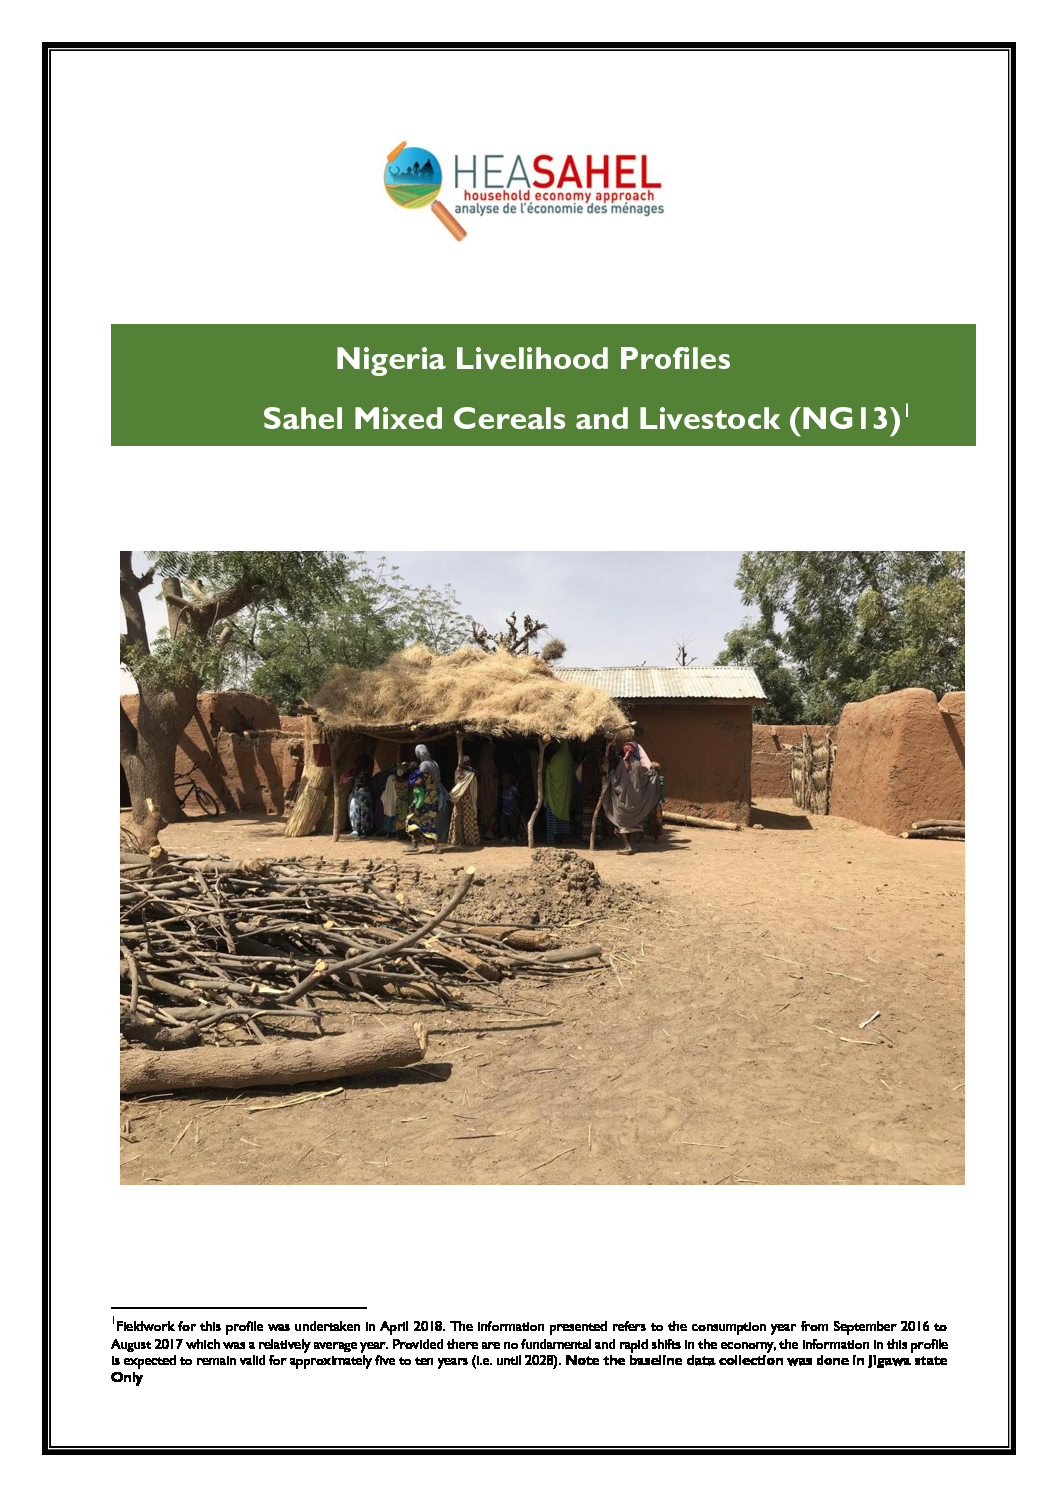 Baseline Nigeria - NG13 - Northern parts of Kebbi, Sokoto, Zamfara, Katsina, Kano, Yobe, Borno, central and northern Jigawa States - April 2018